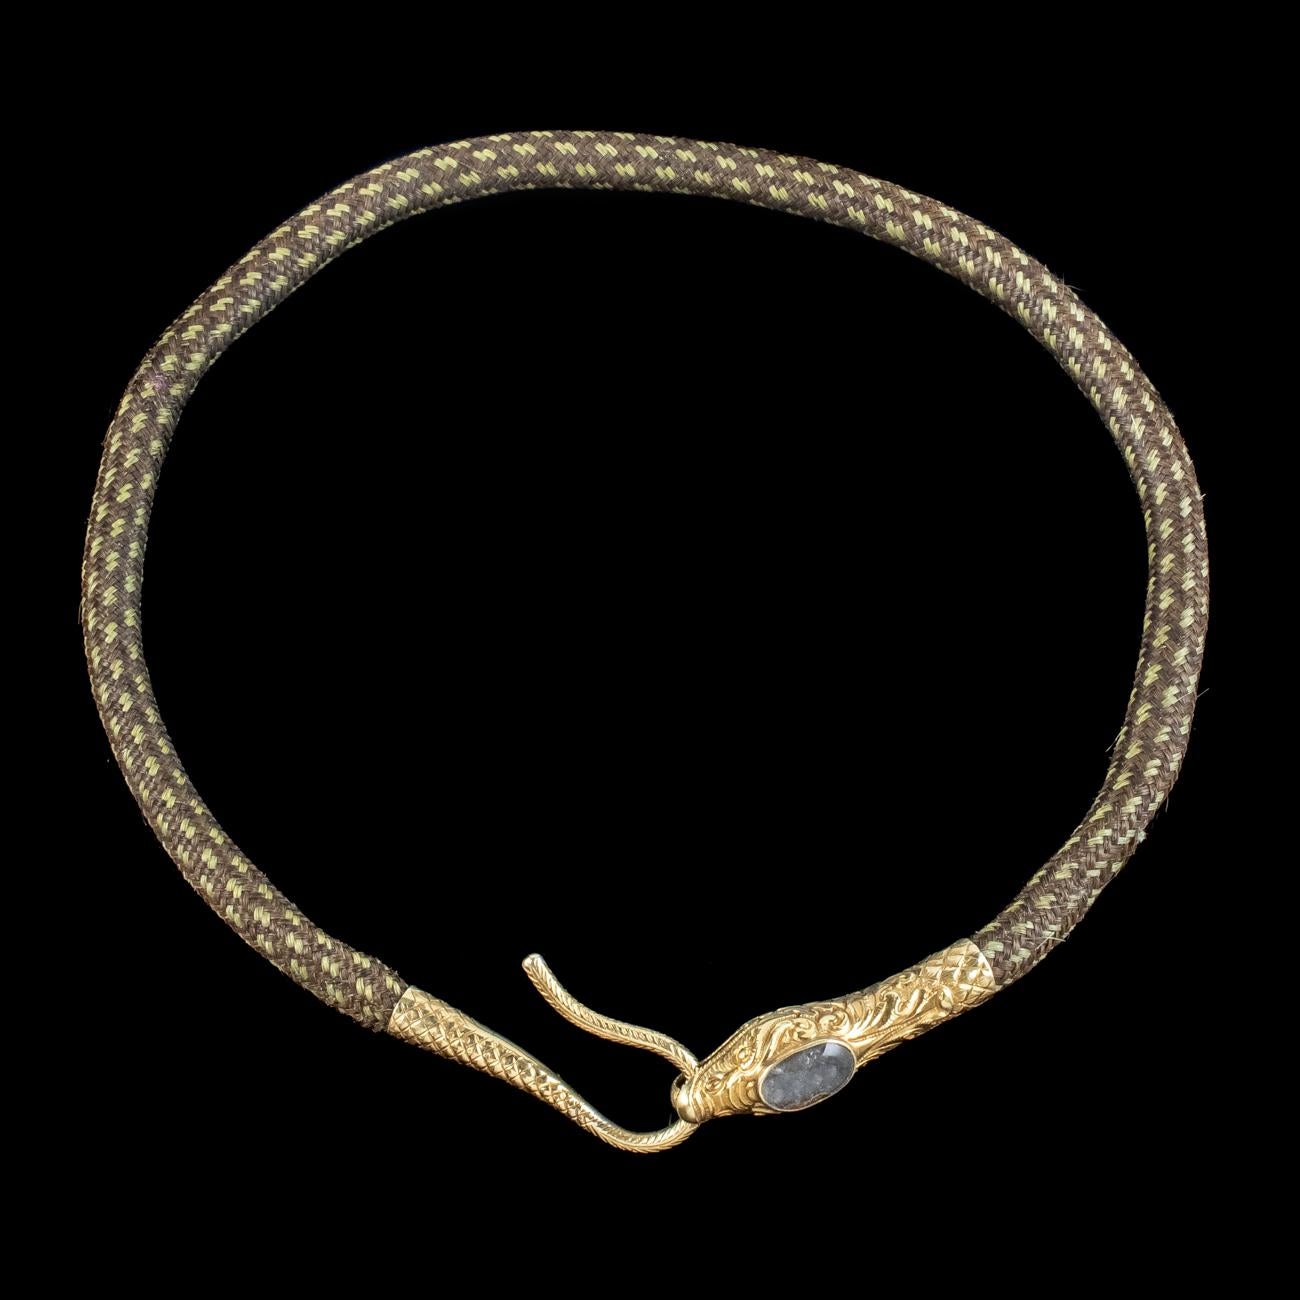 Ein exquisites antikes georgianisches Schlangenhalsband aus dem frühen 19. Jahrhundert, das aus drei verschiedenen Schattierungen braunen Haars besteht, die schön zu einem dicken Band geflochten sind.

Das Stück ist mit einem fabelhaften